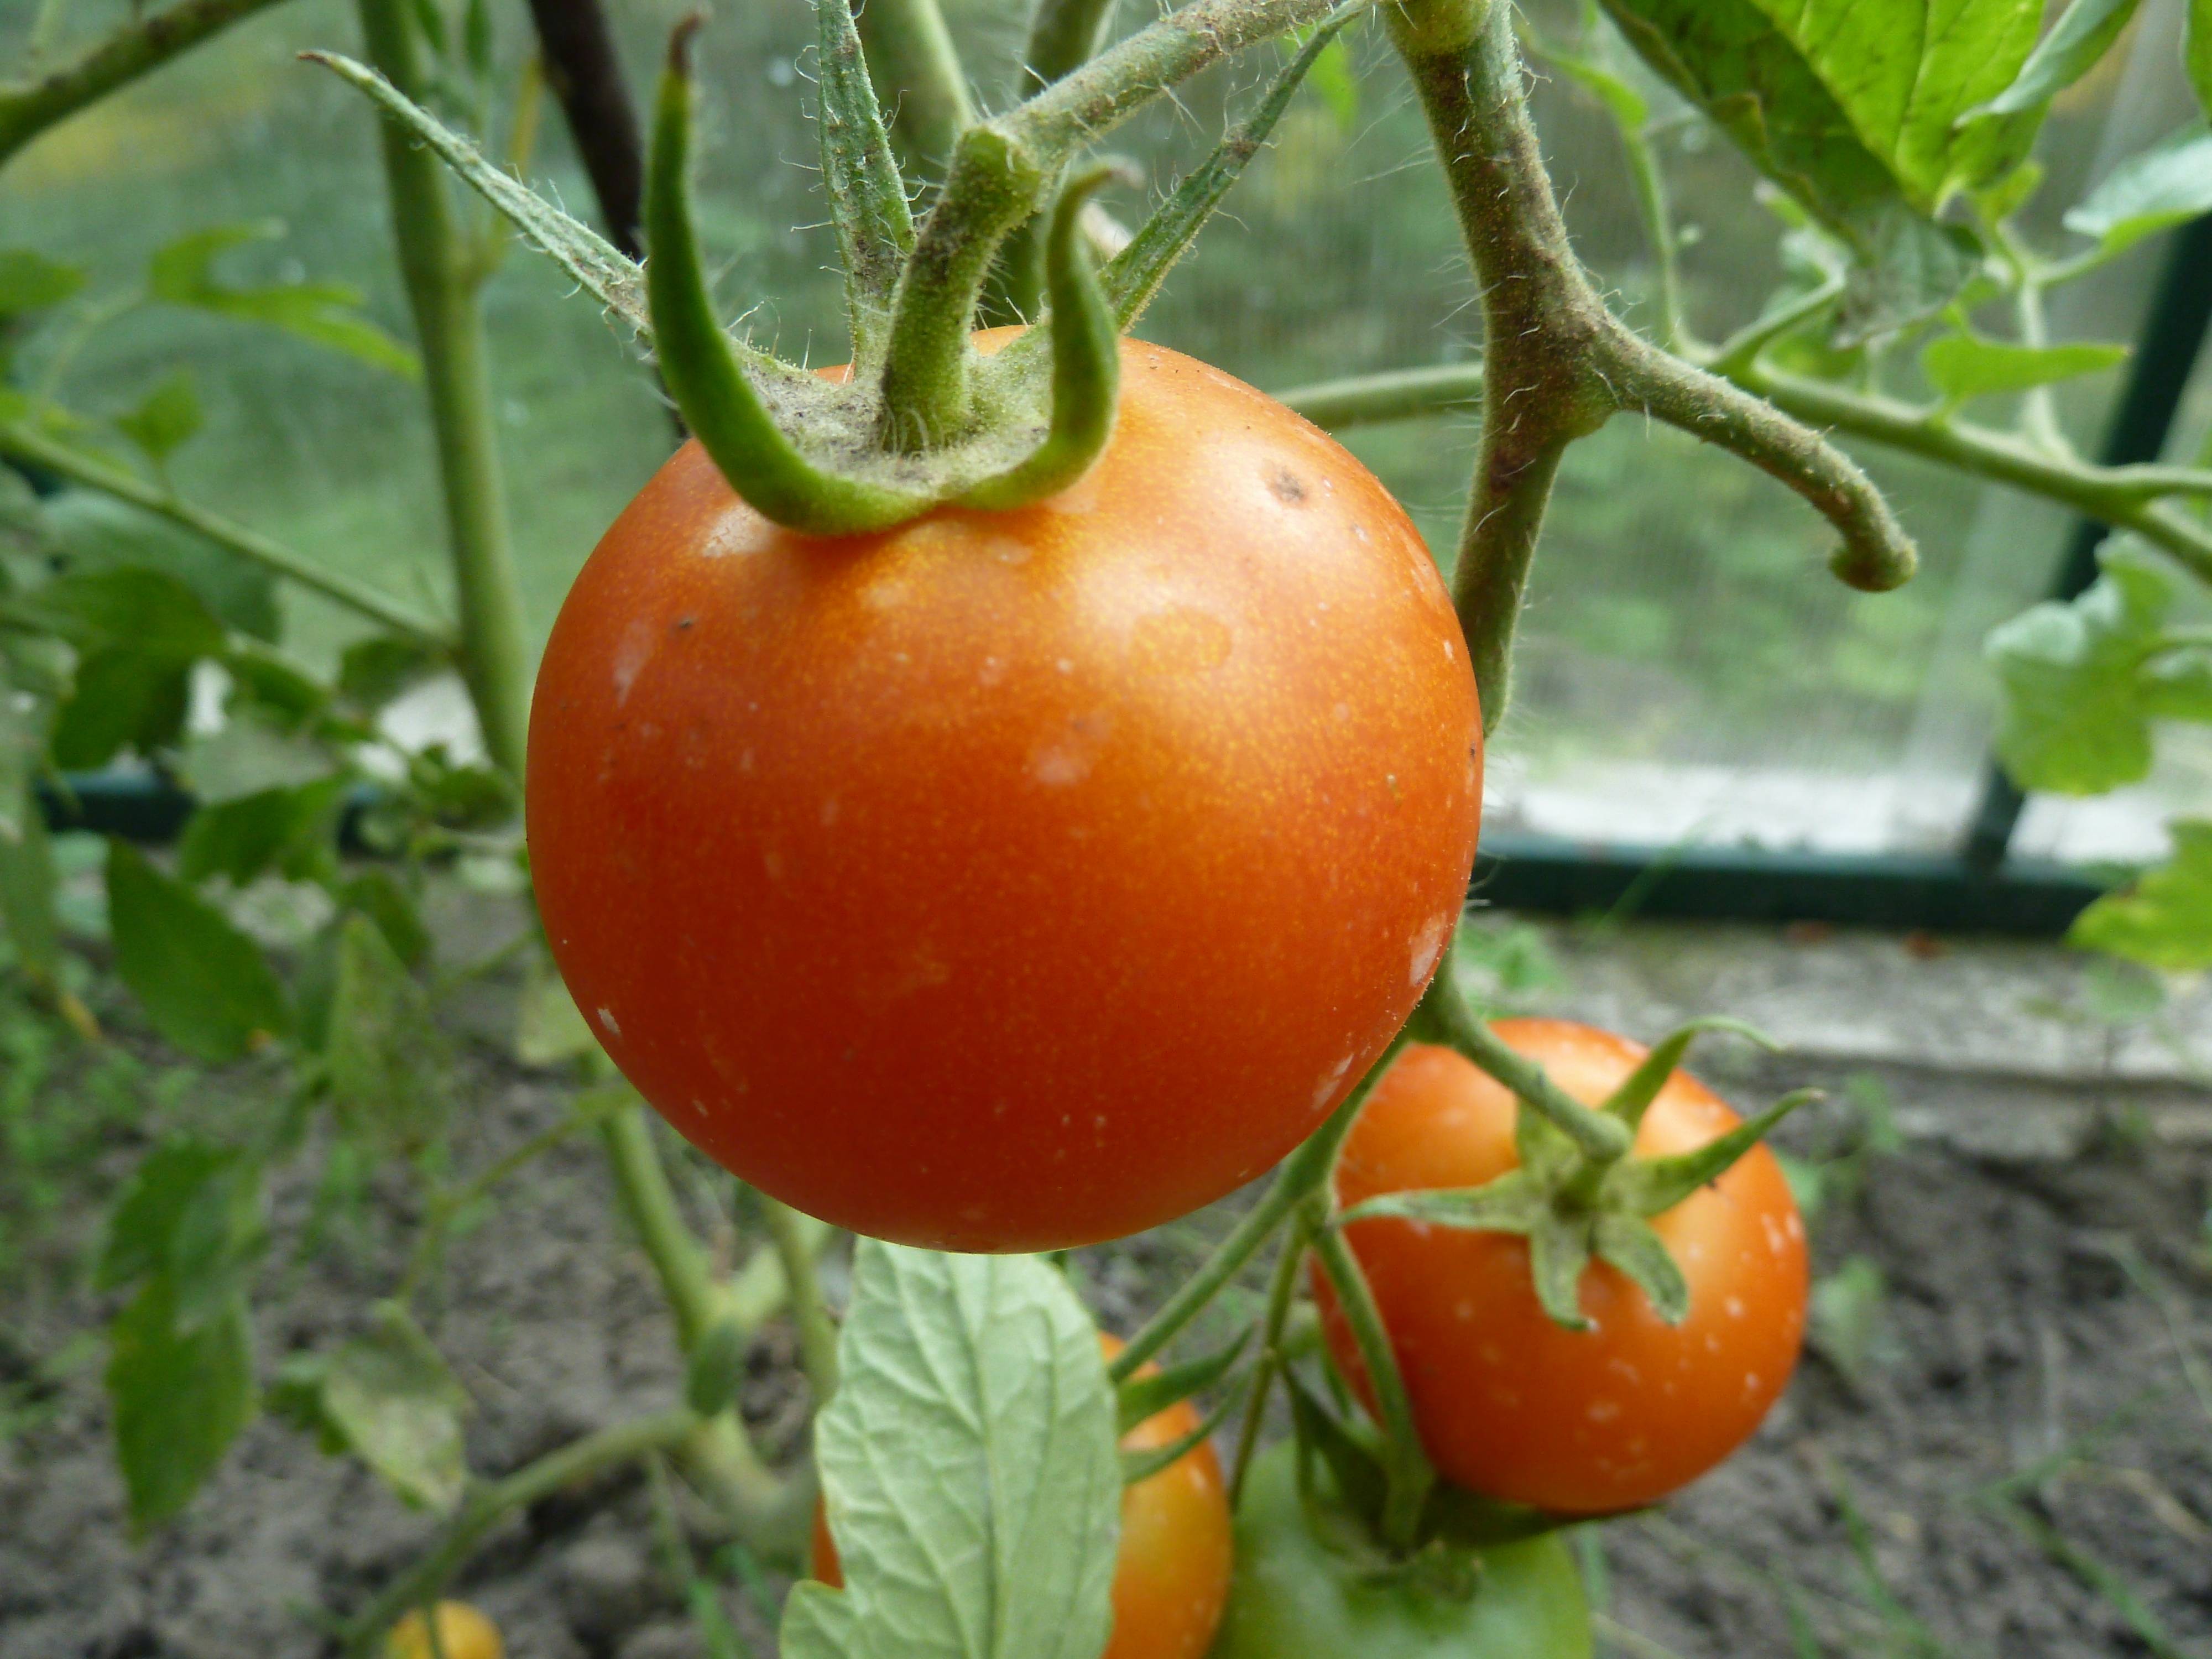 Самые лучшие сорта томатов для открытого грунта для средней полосы и не только